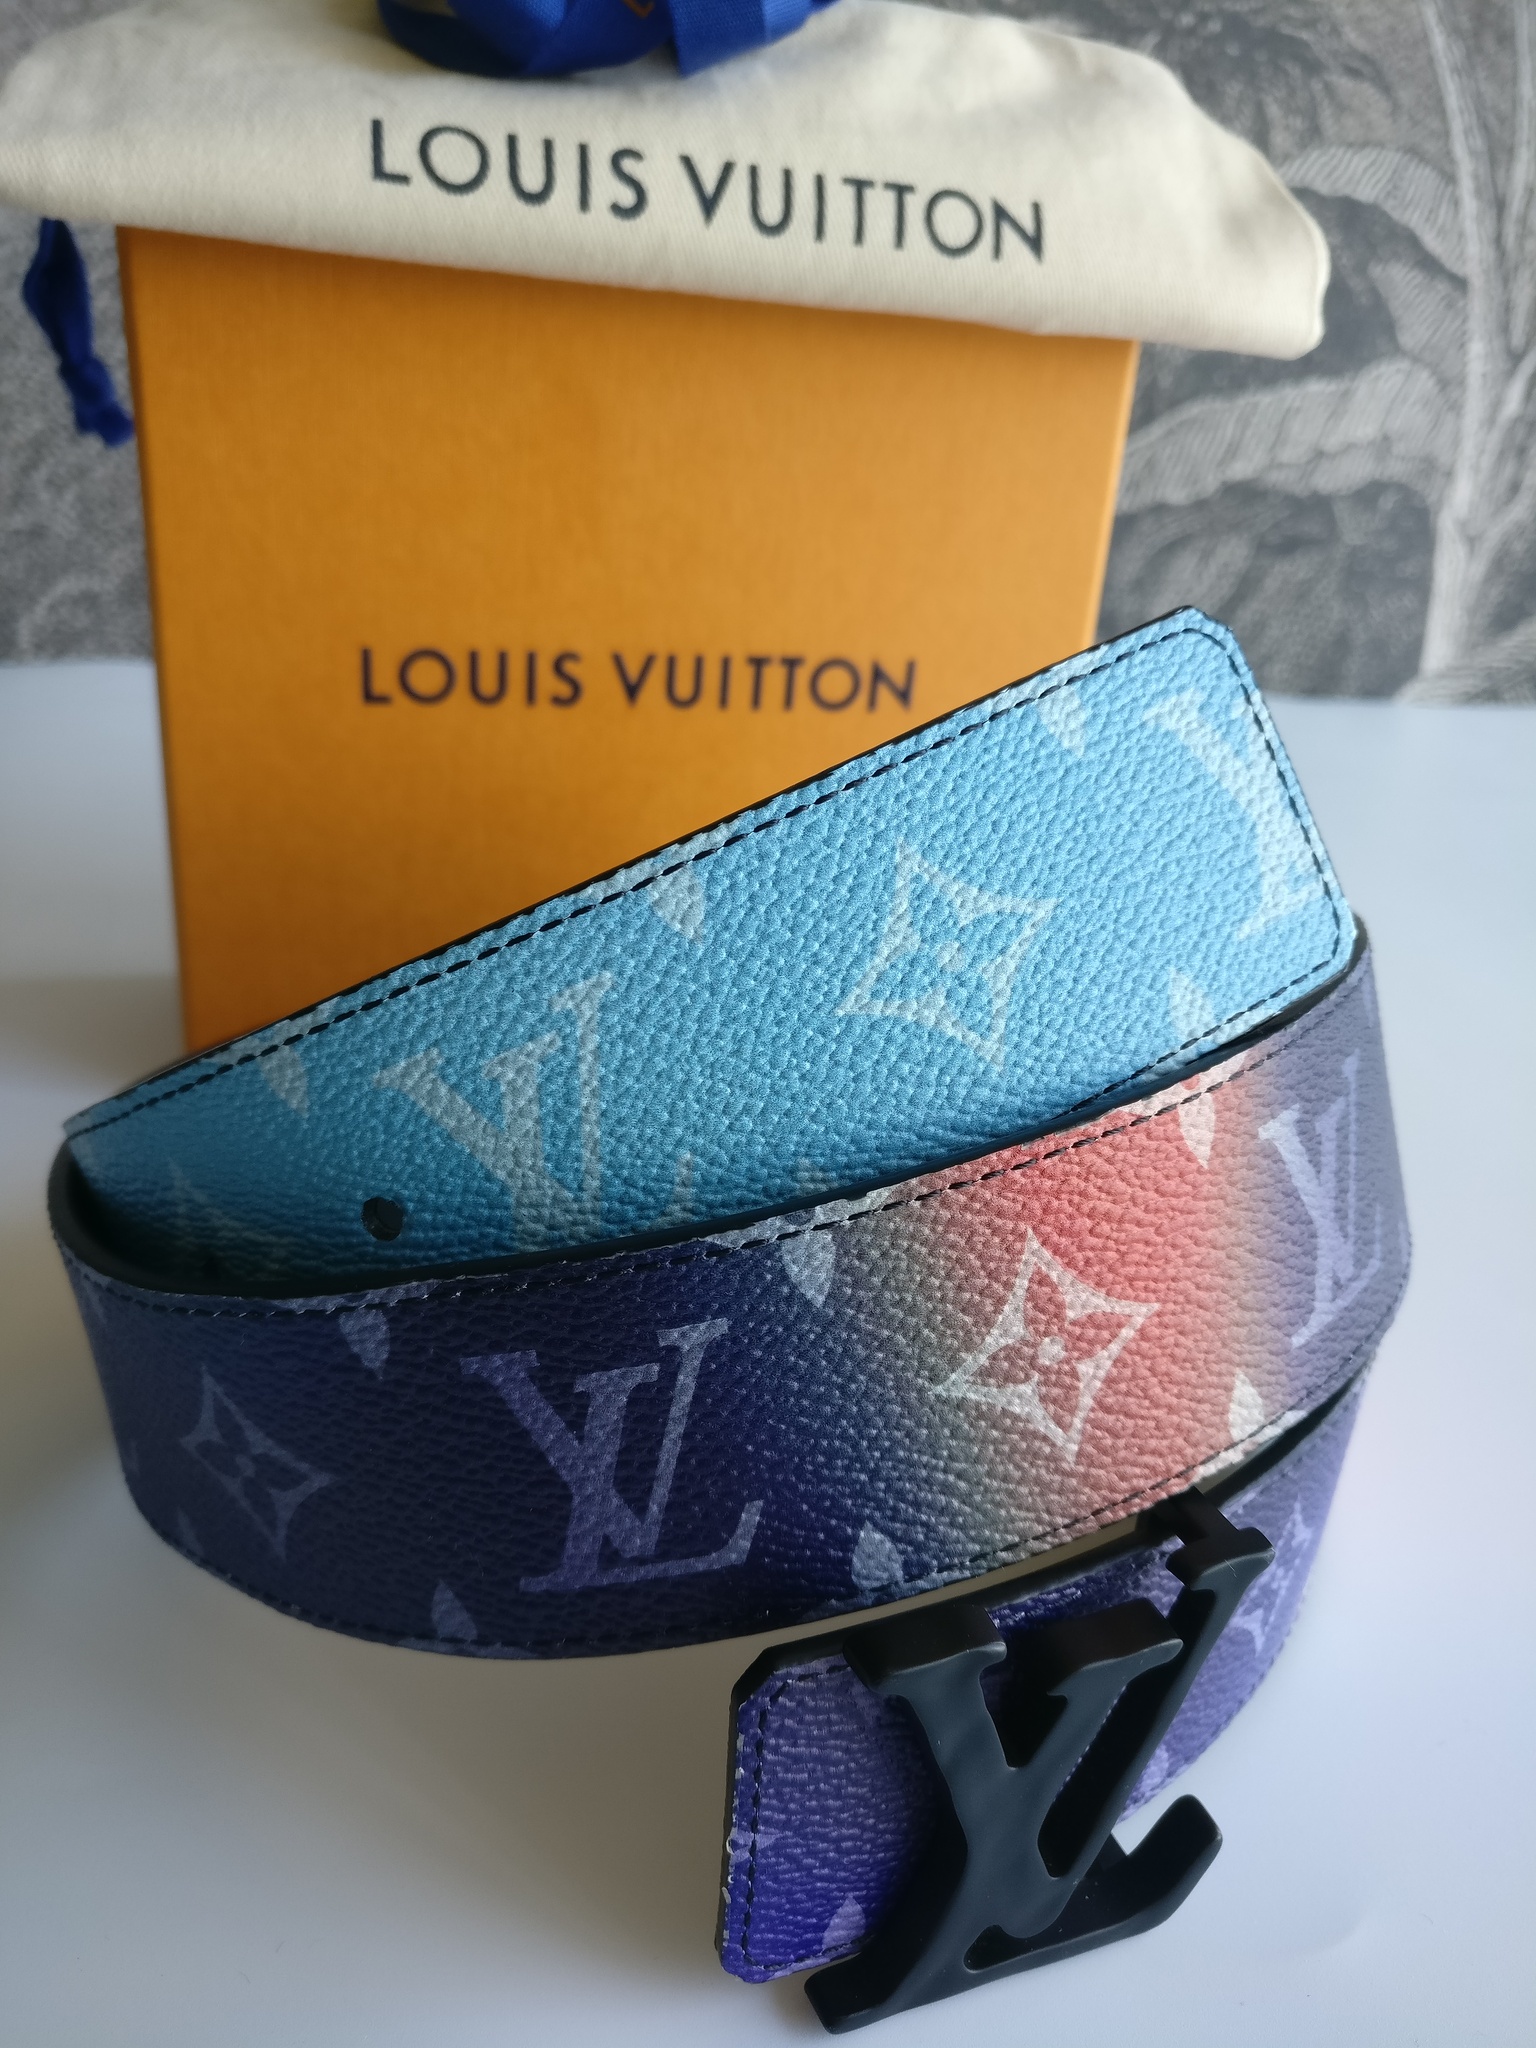 Louis Vuitton Sunset monogram canvas reversible belt